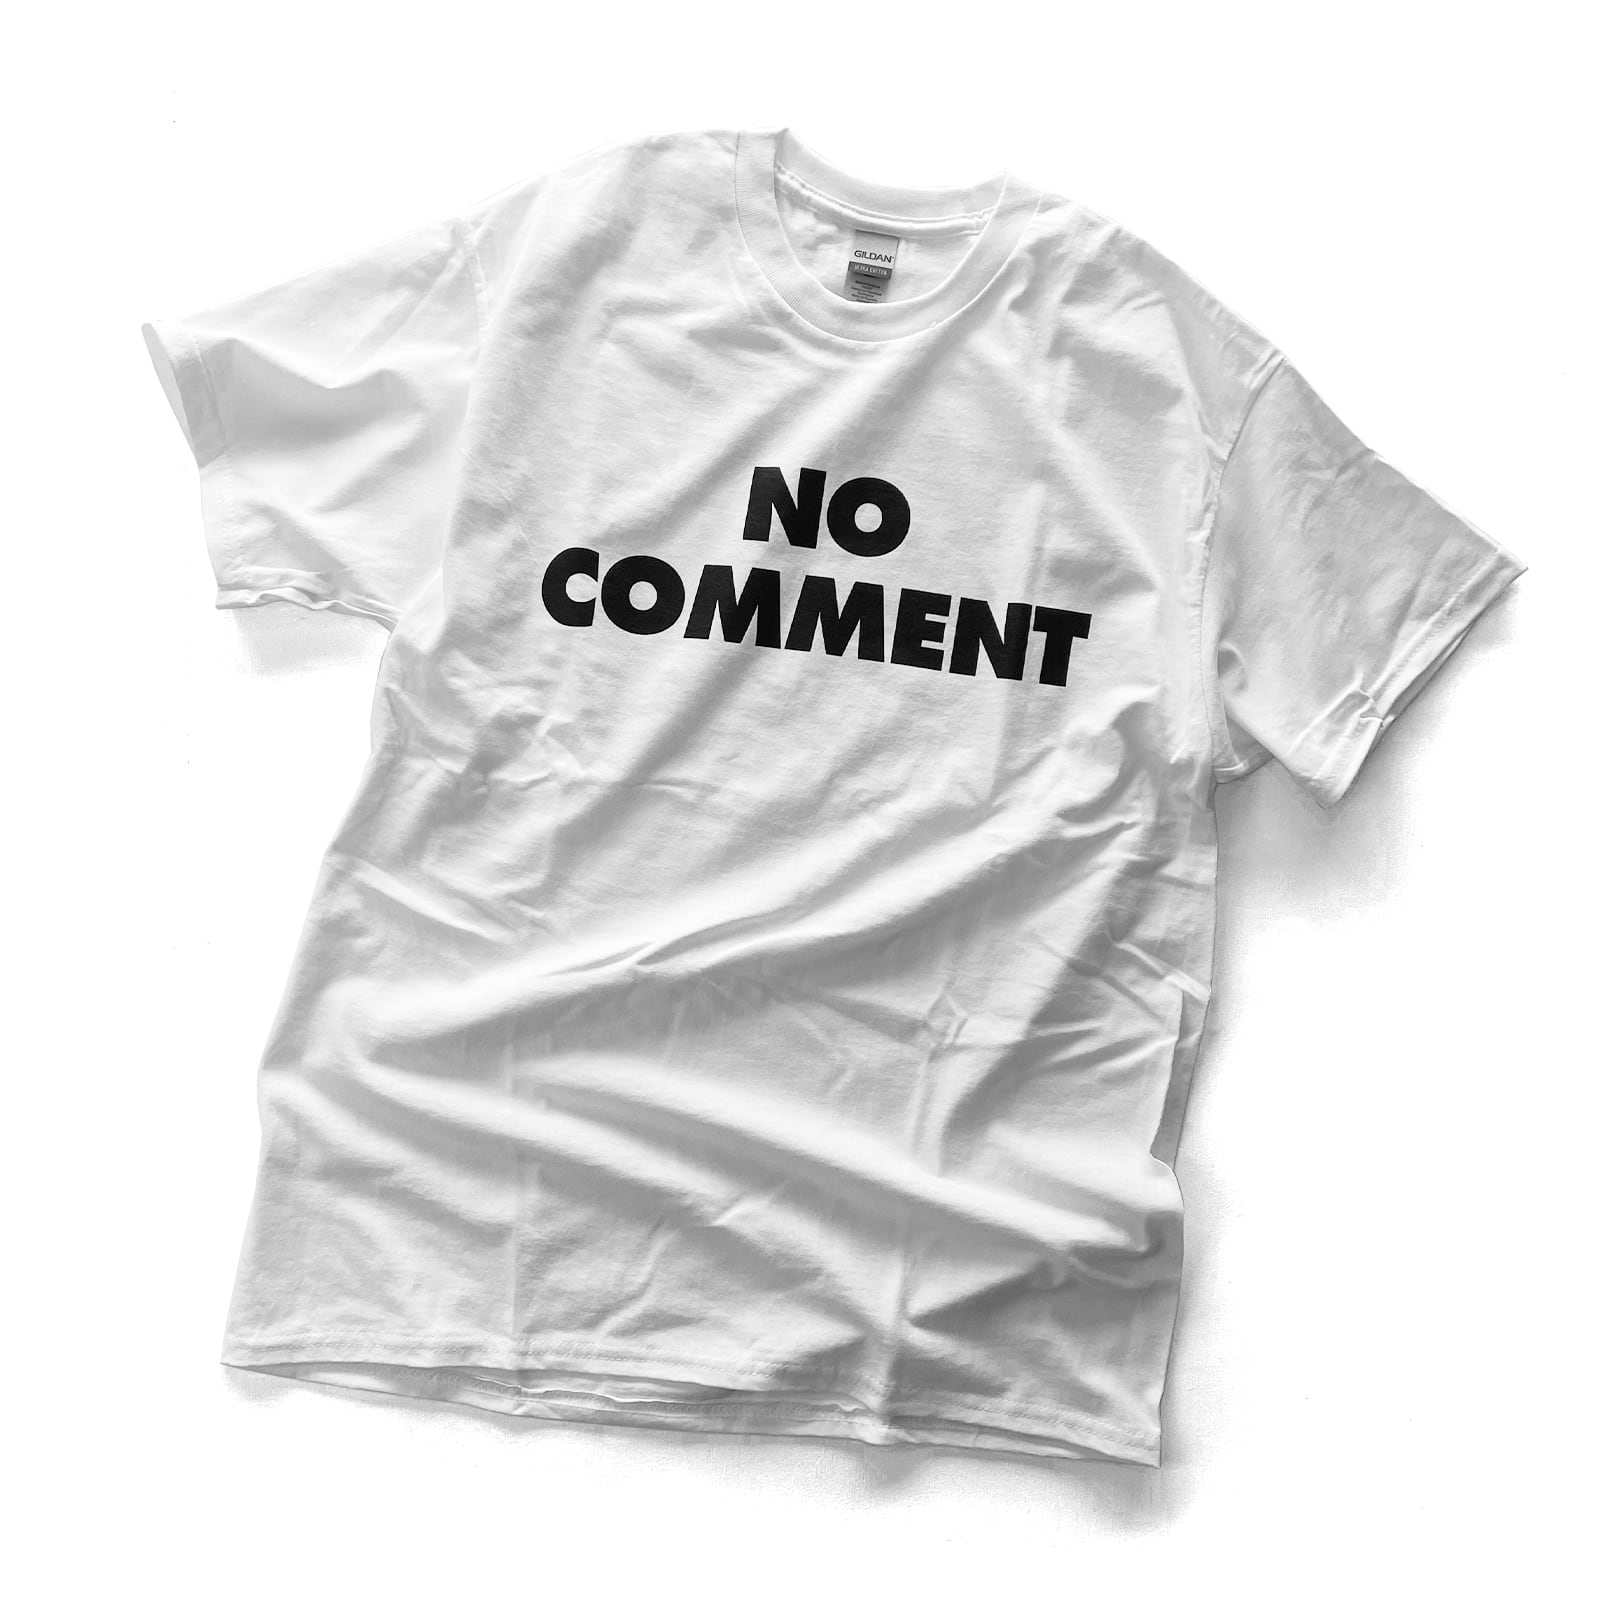 SUB POP 「NO COMMENT 」 オルタナ ロック グランジ バンド Tシャツ